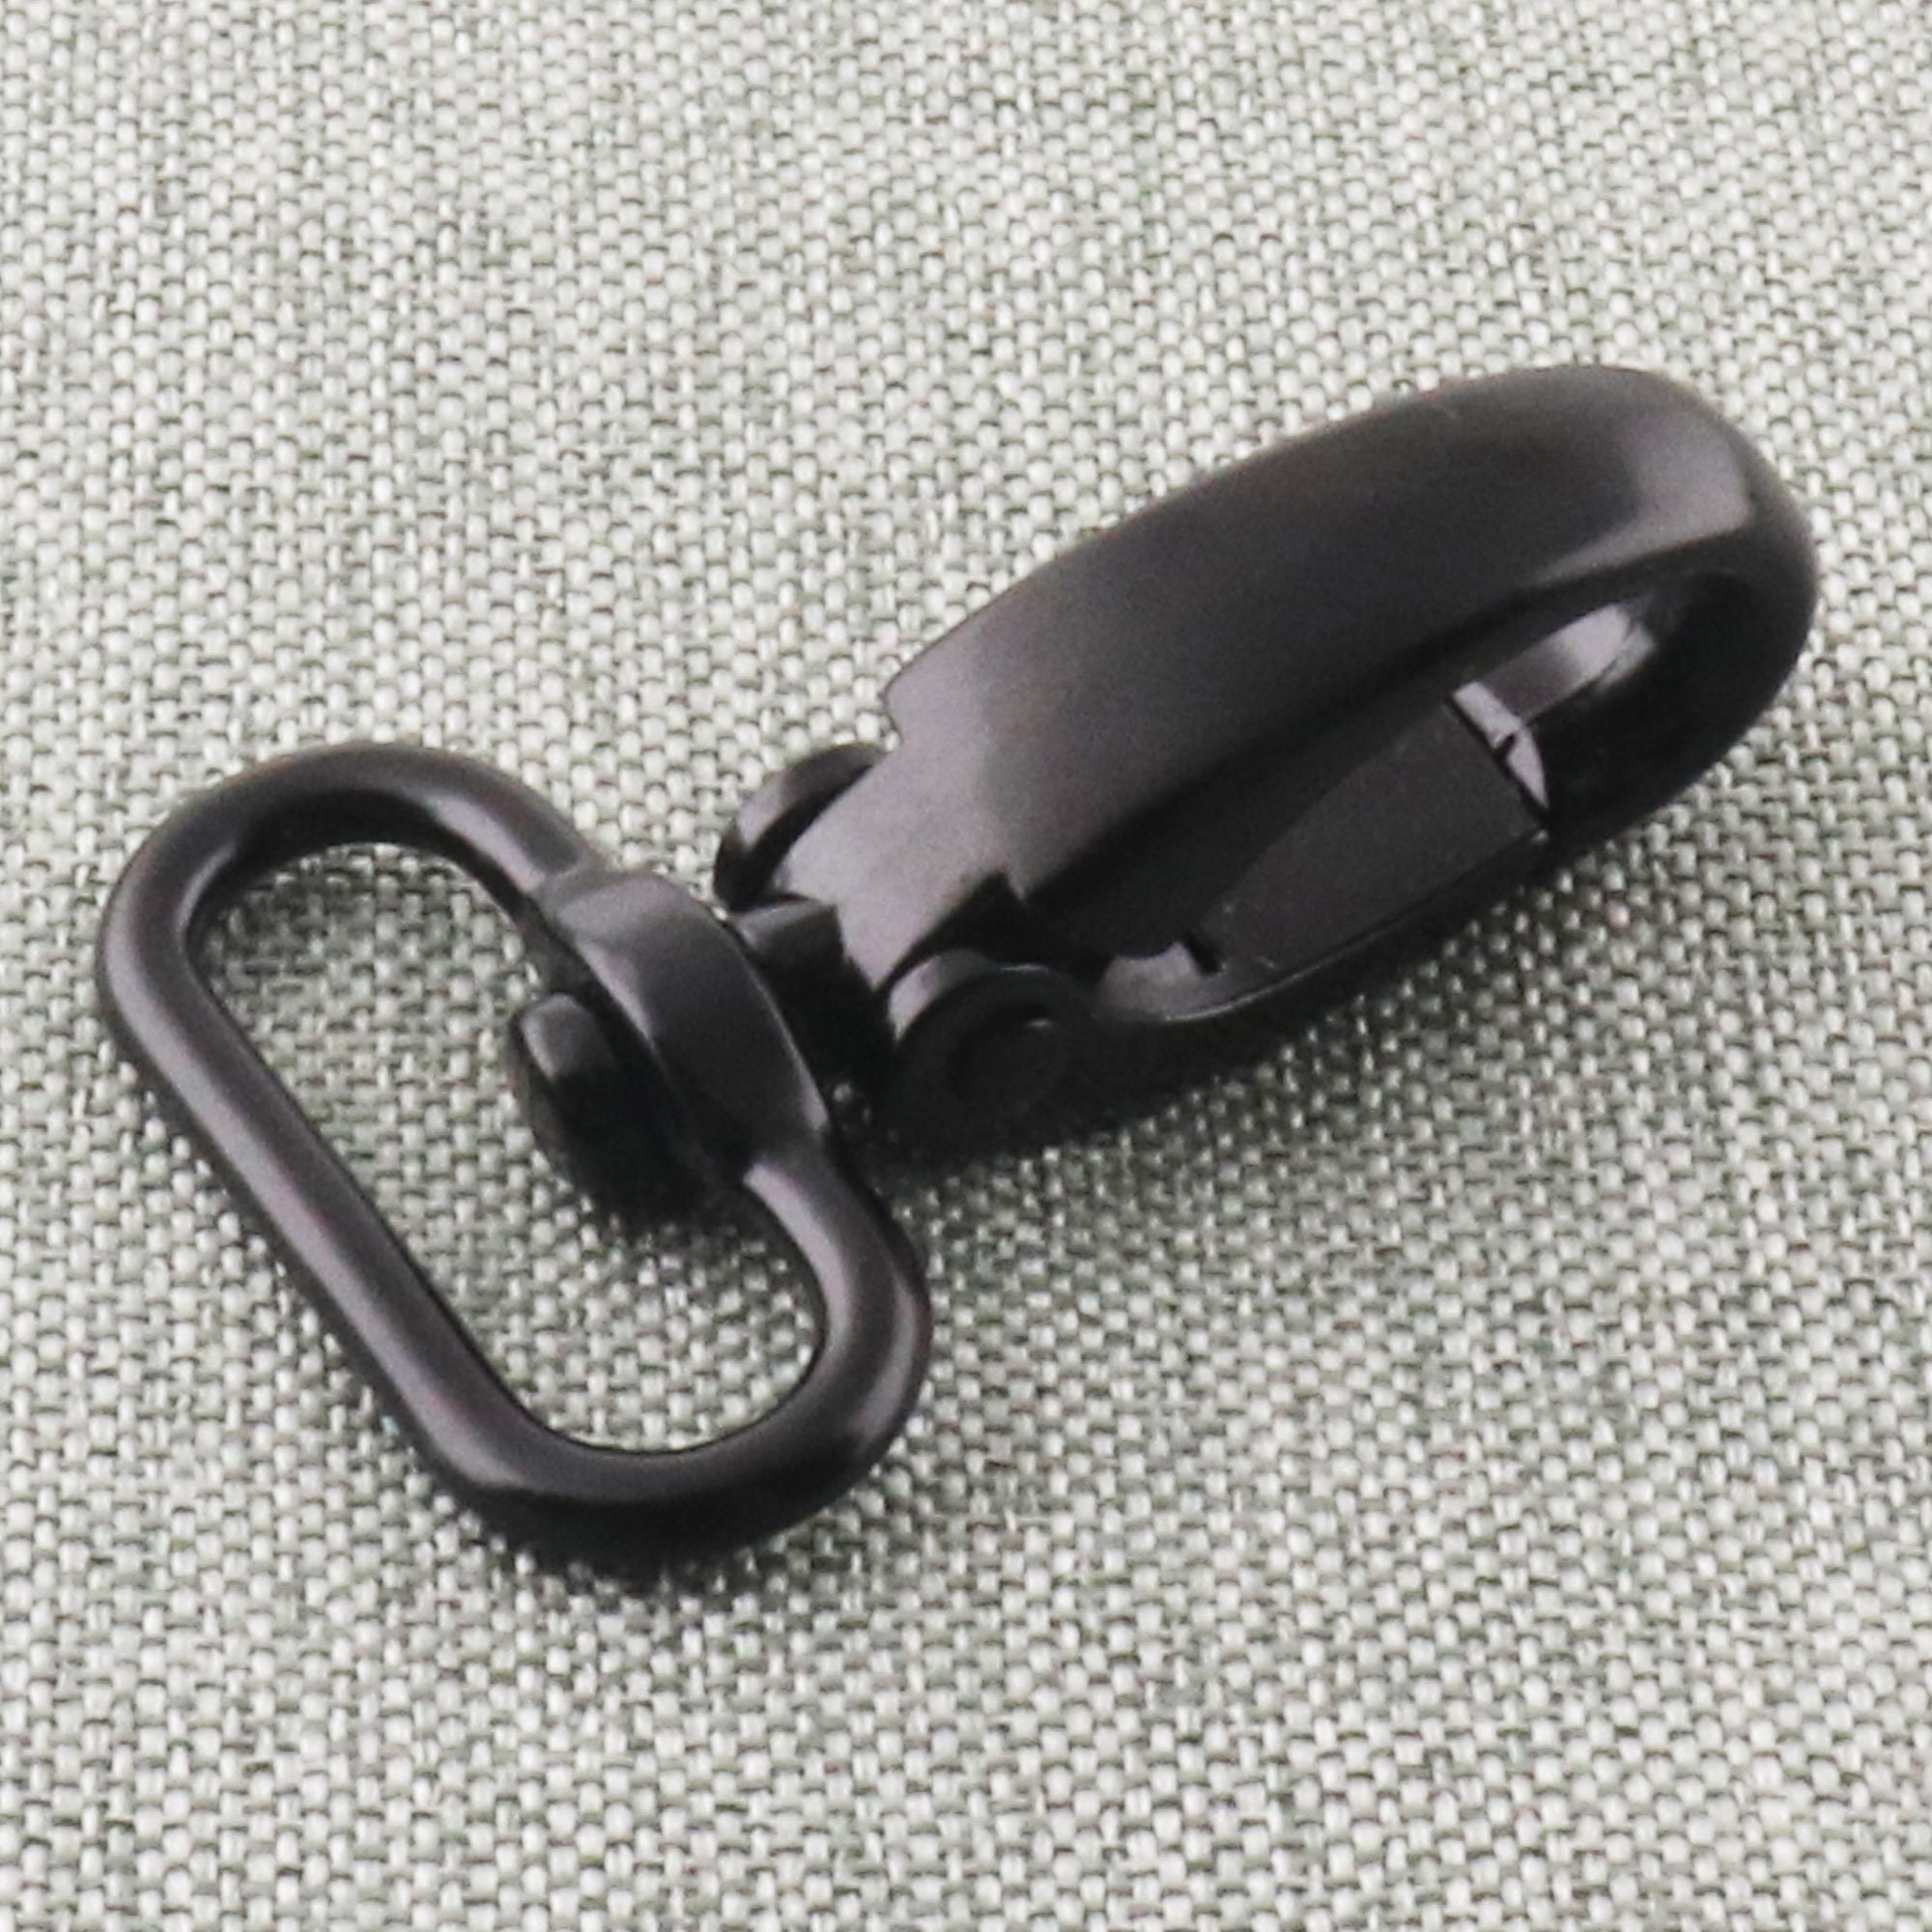 Reinforced Snap Hook, 1-1/4 inch, black, 10pc lot